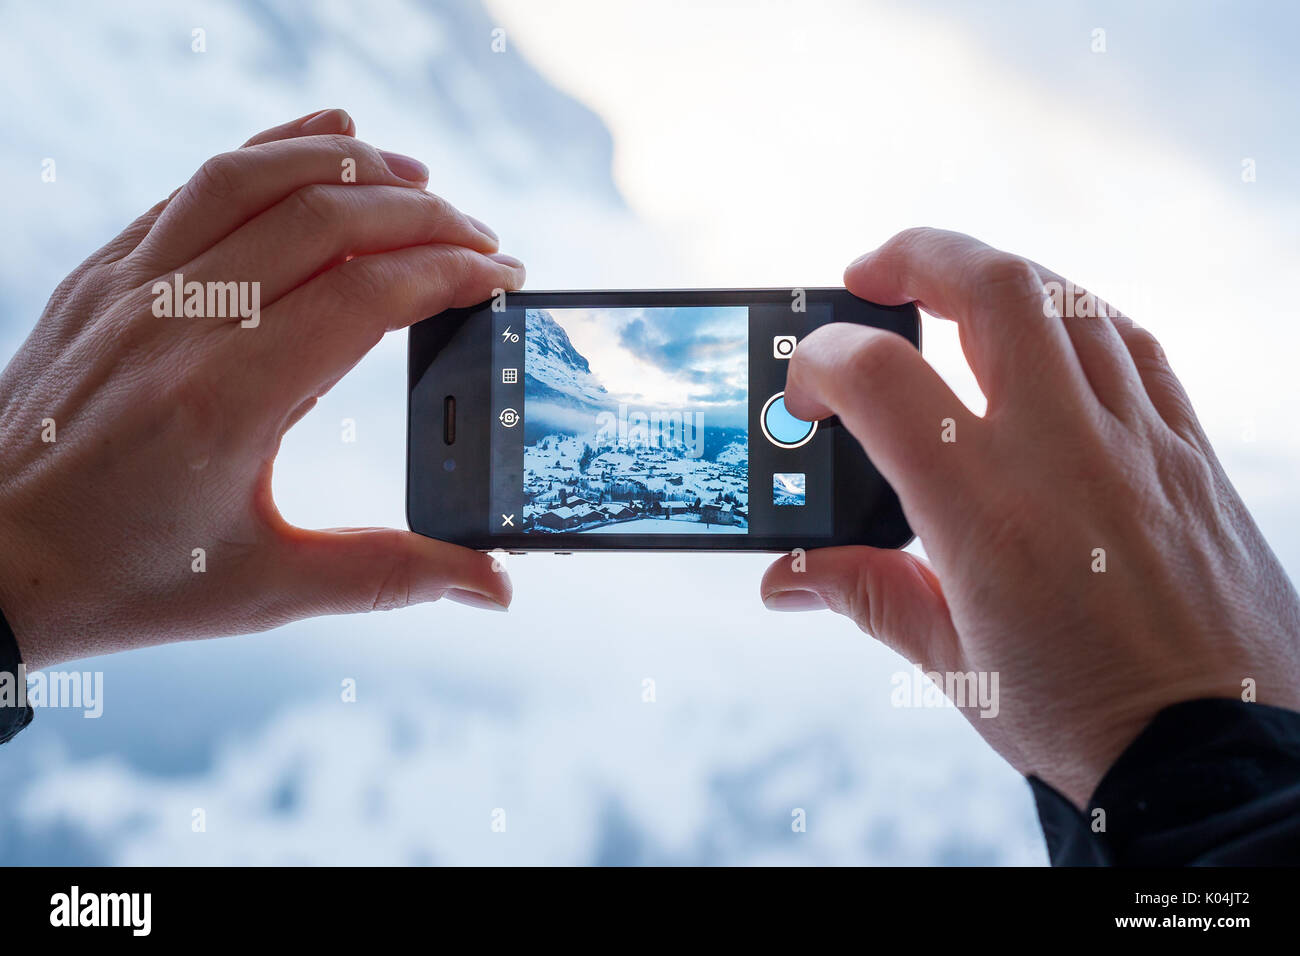 GRINDELWALD, Svizzera - 4 febbraio 2014: Donna di prendere una fotografia di montagna utilizzando il Instagram App su un iPhone di Apple. Instagram consente agli utenti Foto Stock